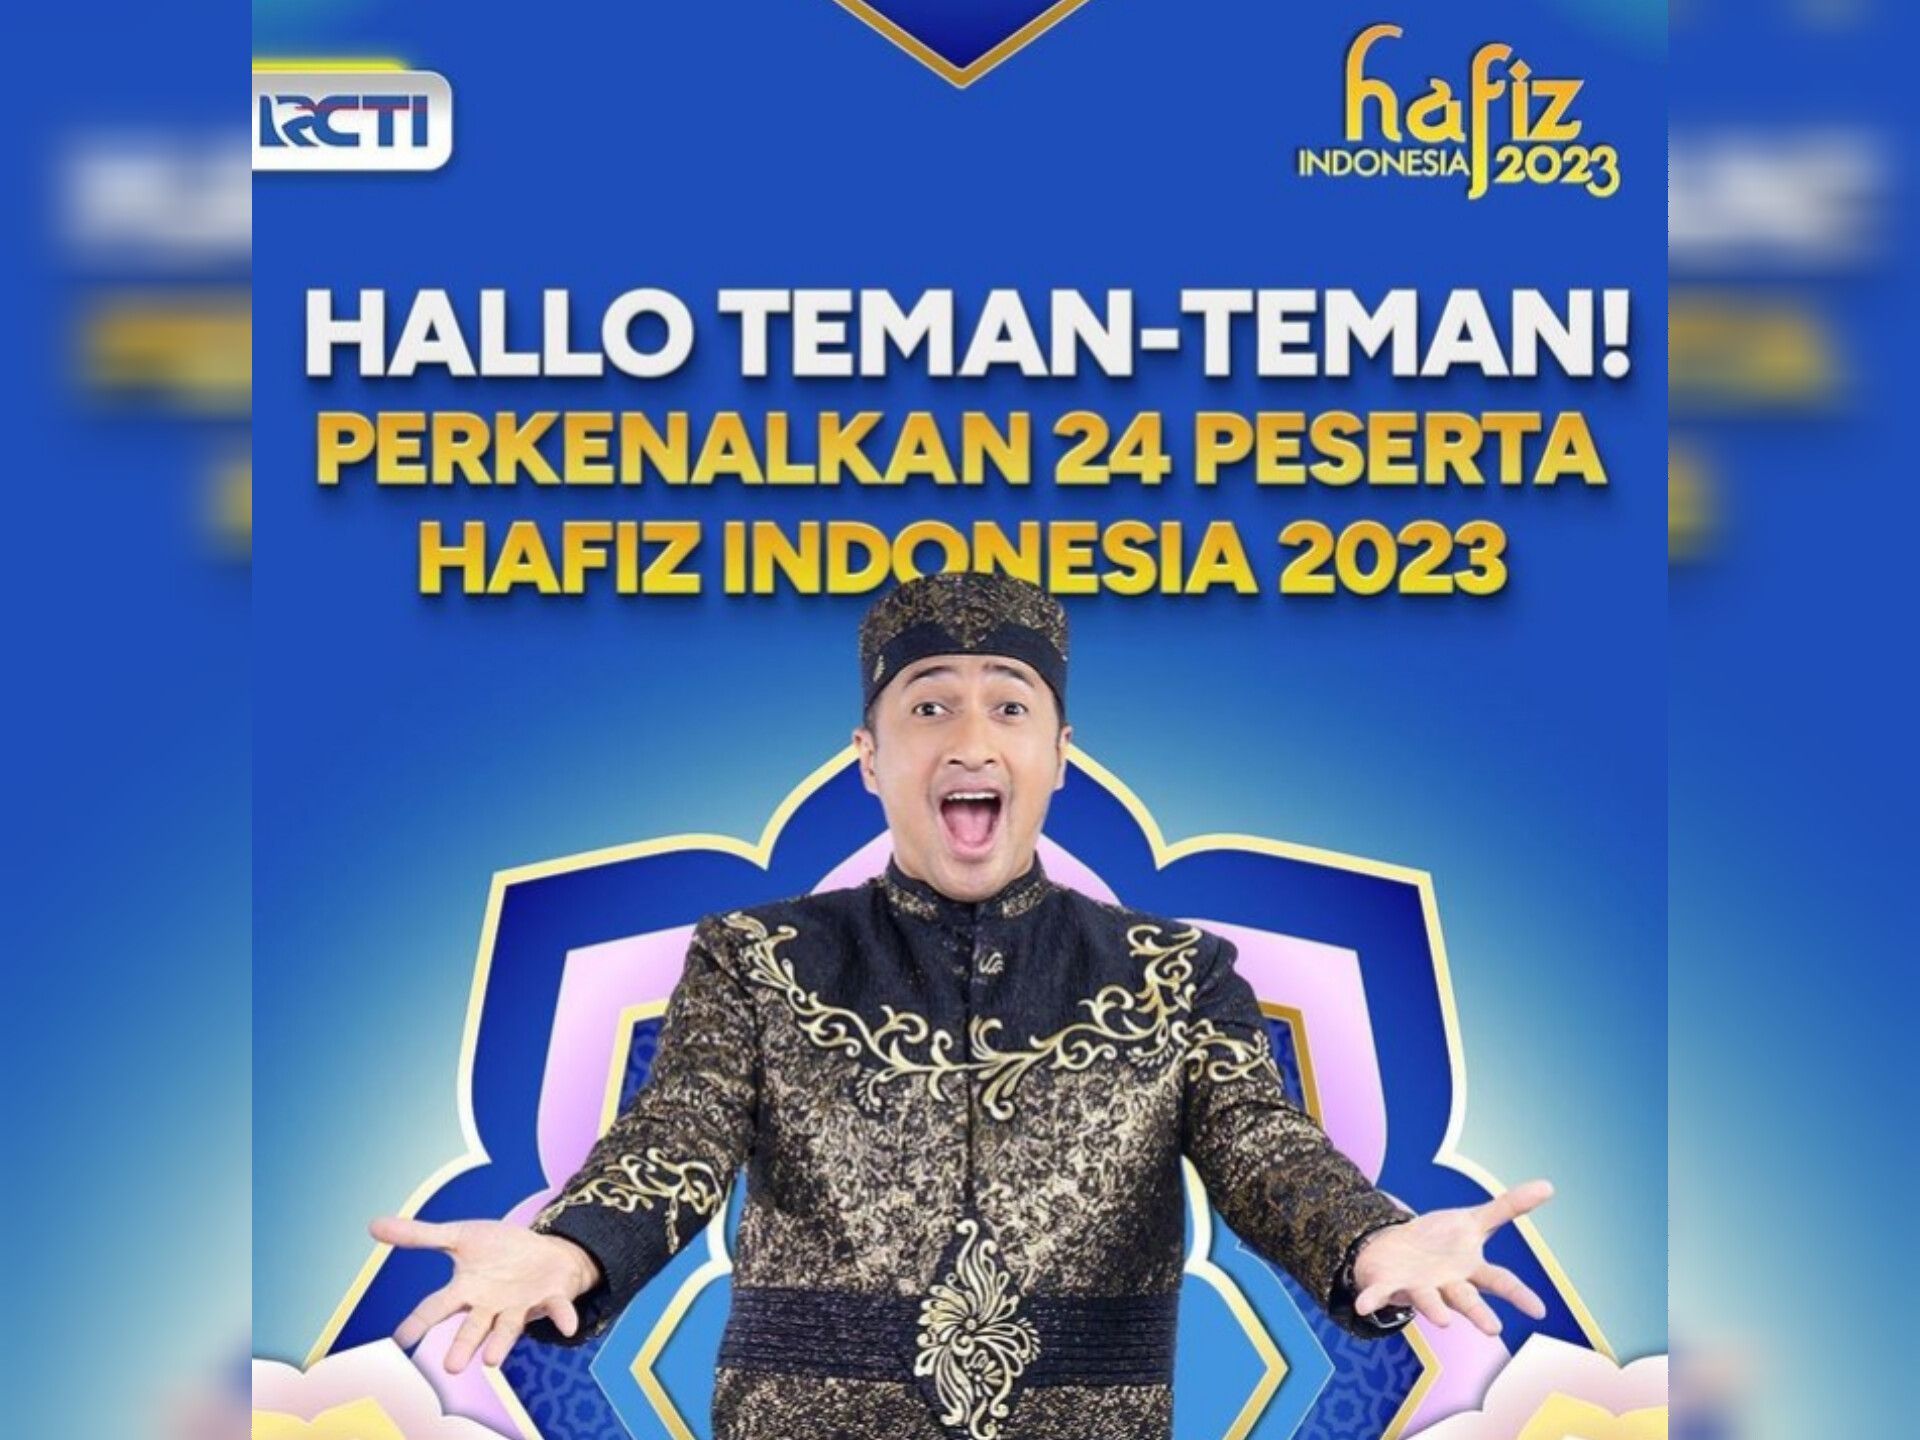 Saksikan Hafiz Indonesia 2023 hari ini di RCTI, Minggu 2 April 2023